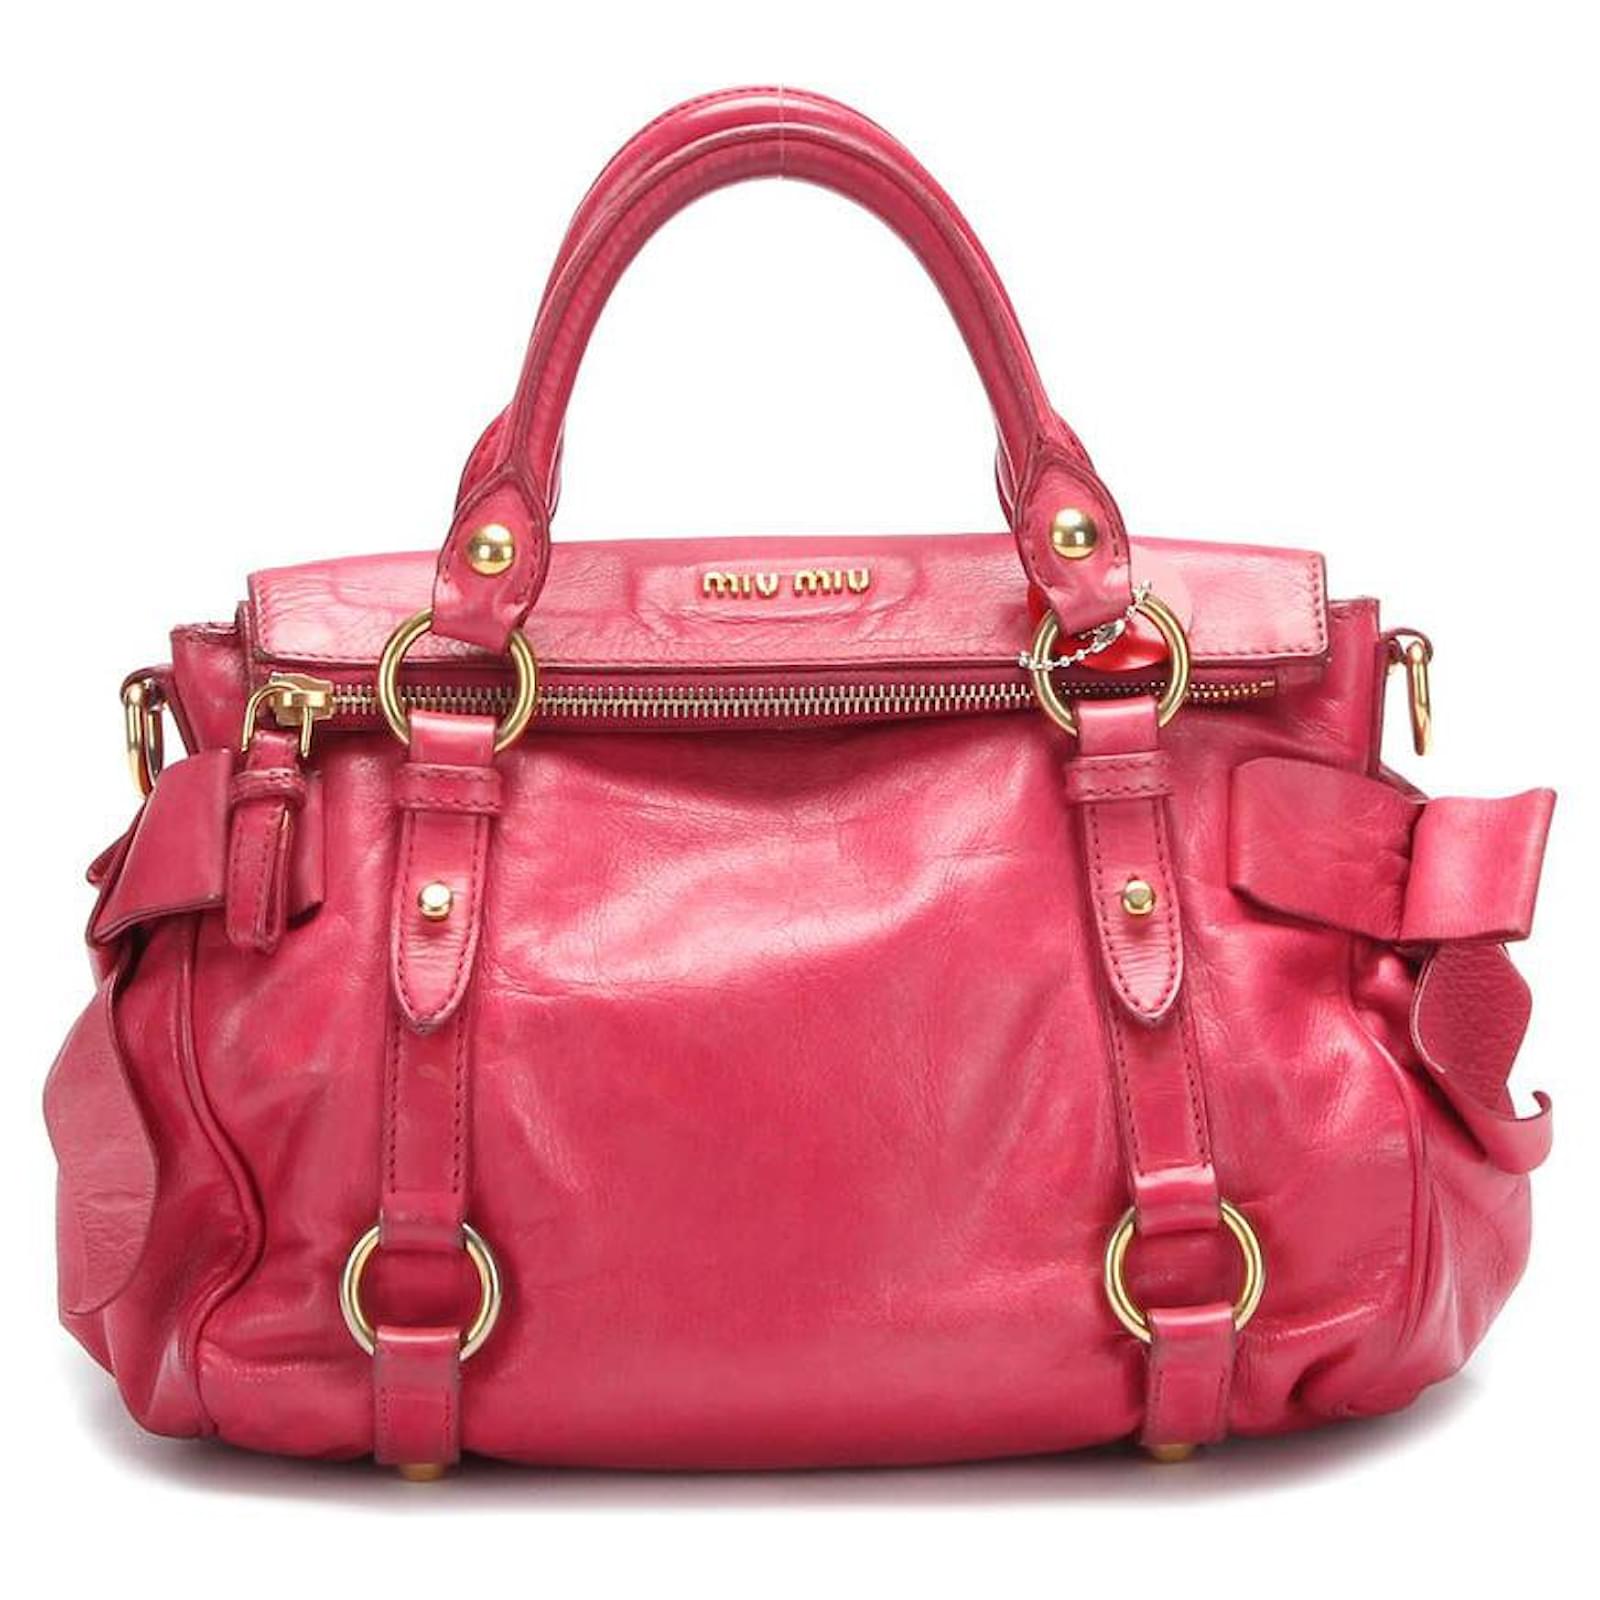 Miu Miu Vitella Lux Bow Bag in Pink 